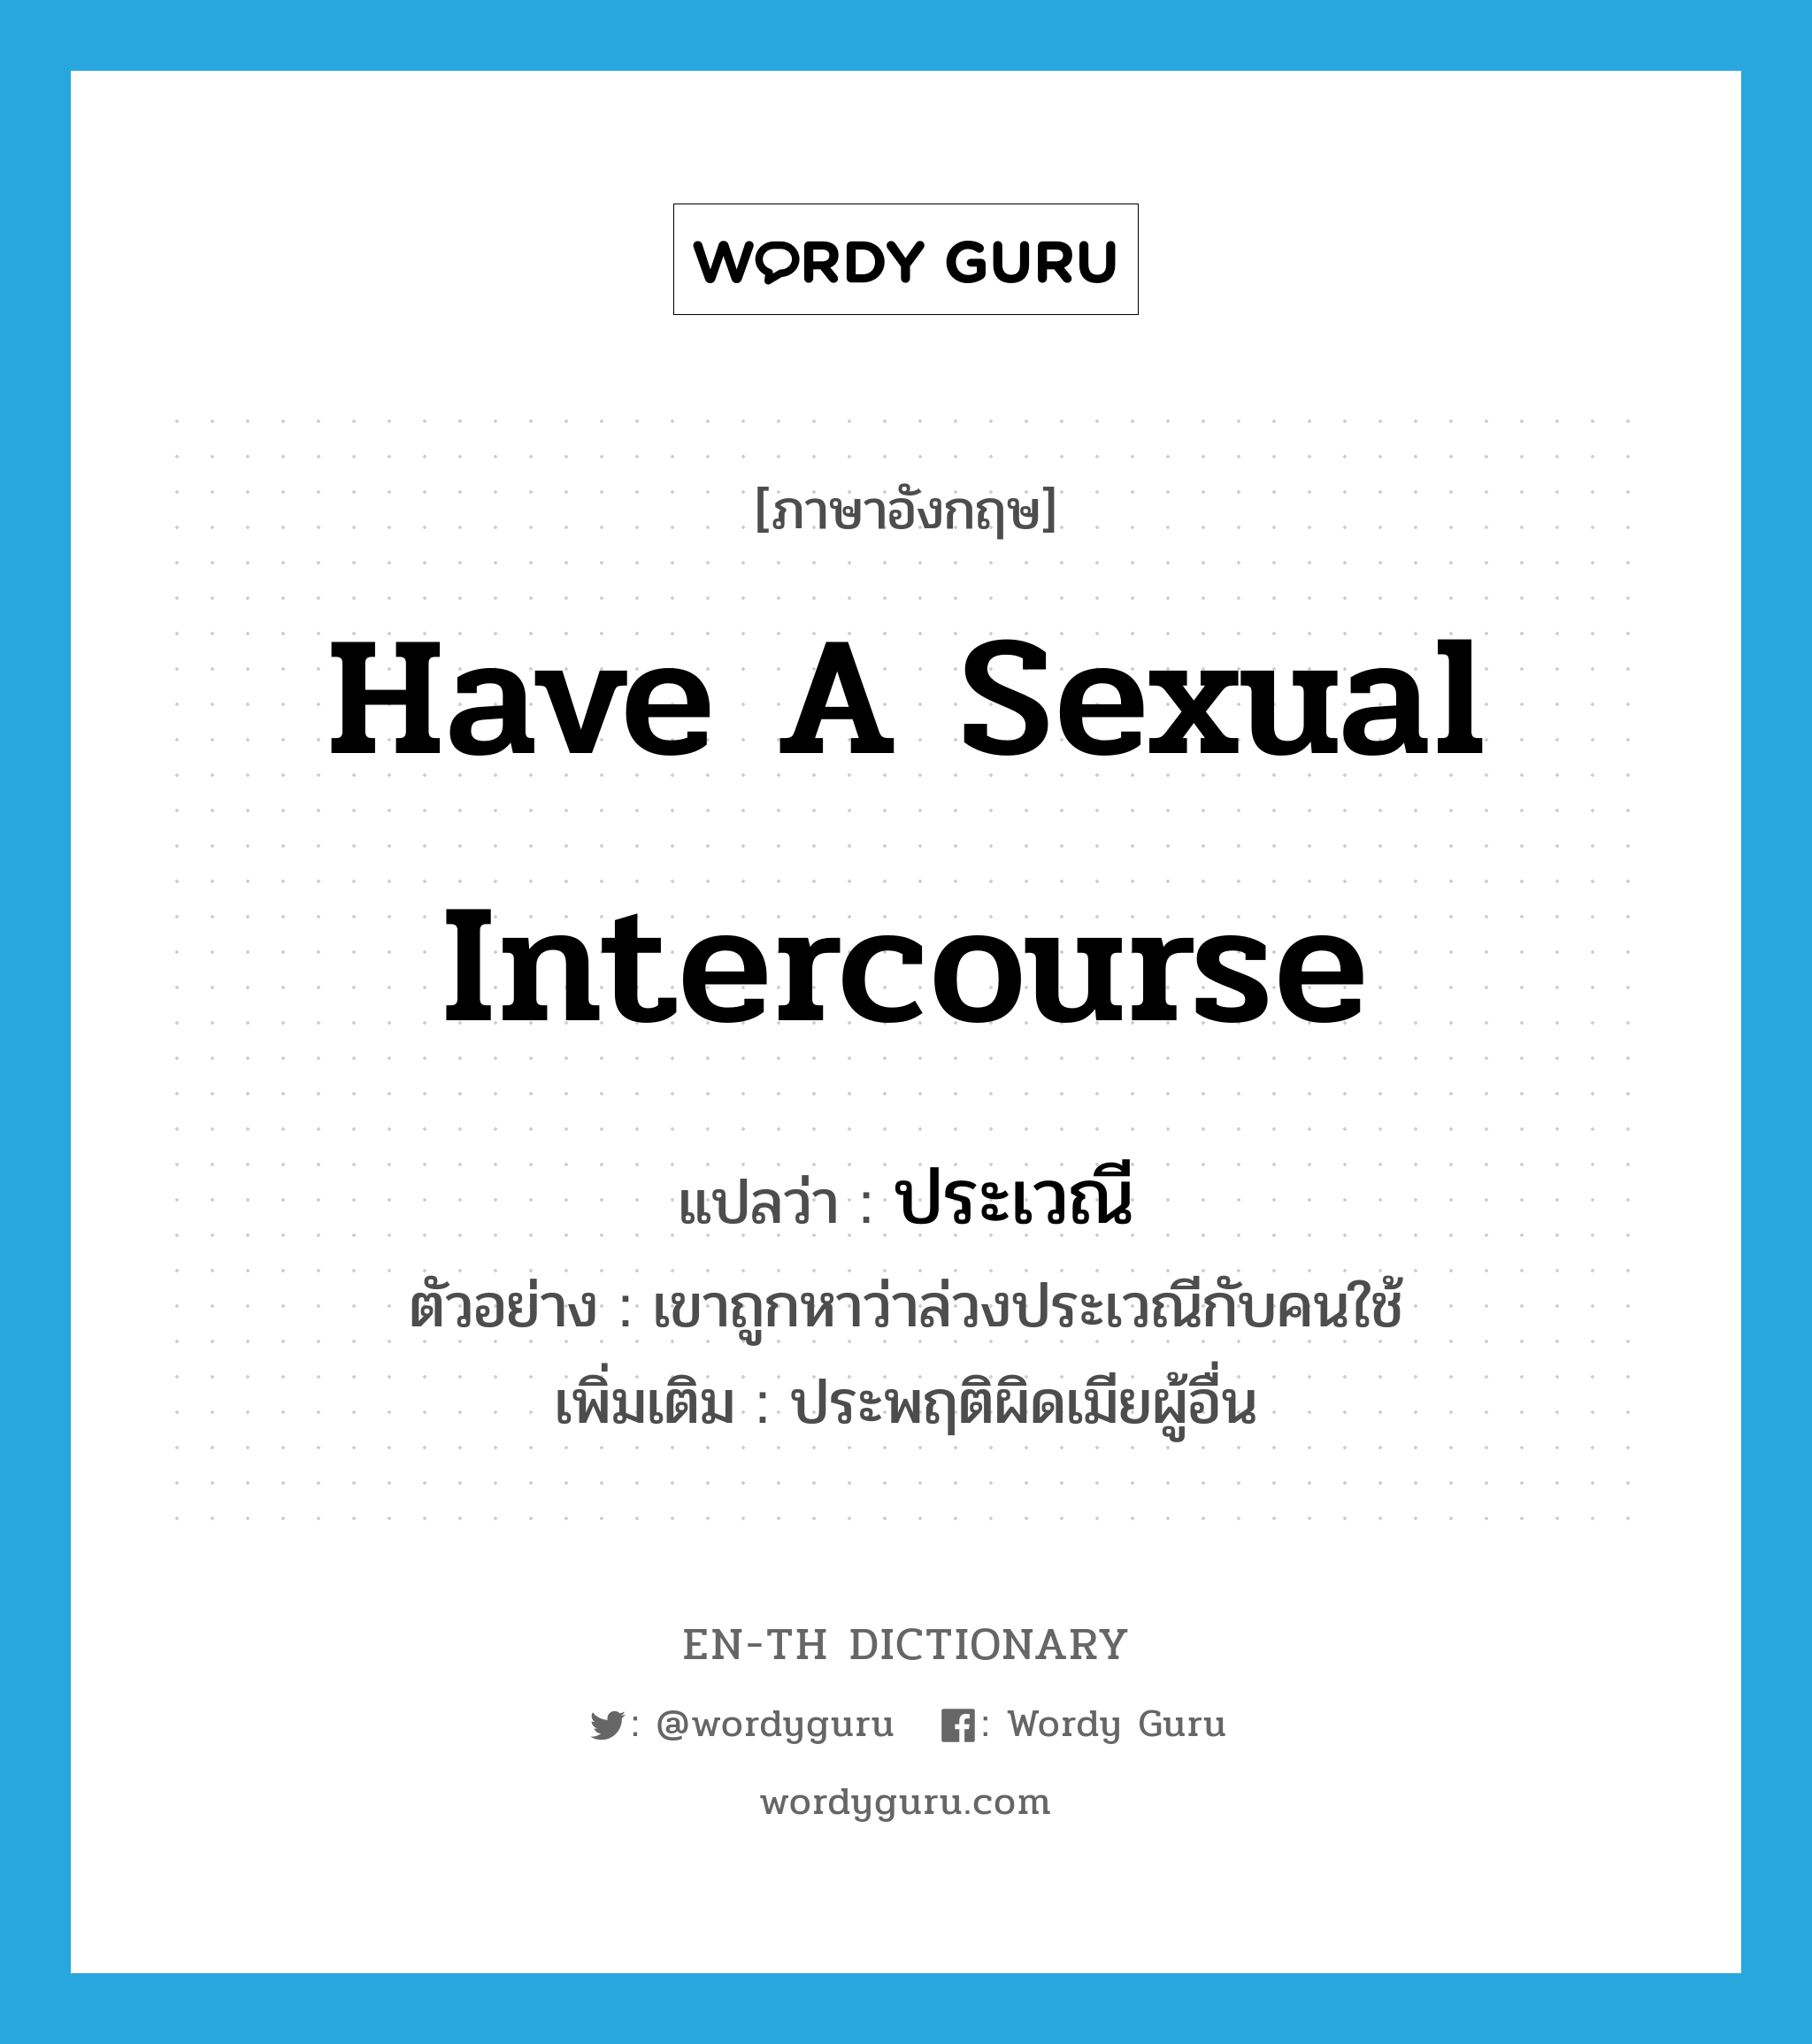 have a sexual intercourse แปลว่า?, คำศัพท์ภาษาอังกฤษ have a sexual intercourse แปลว่า ประเวณี ประเภท V ตัวอย่าง เขาถูกหาว่าล่วงประเวณีกับคนใช้ เพิ่มเติม ประพฤติผิดเมียผู้อื่น หมวด V